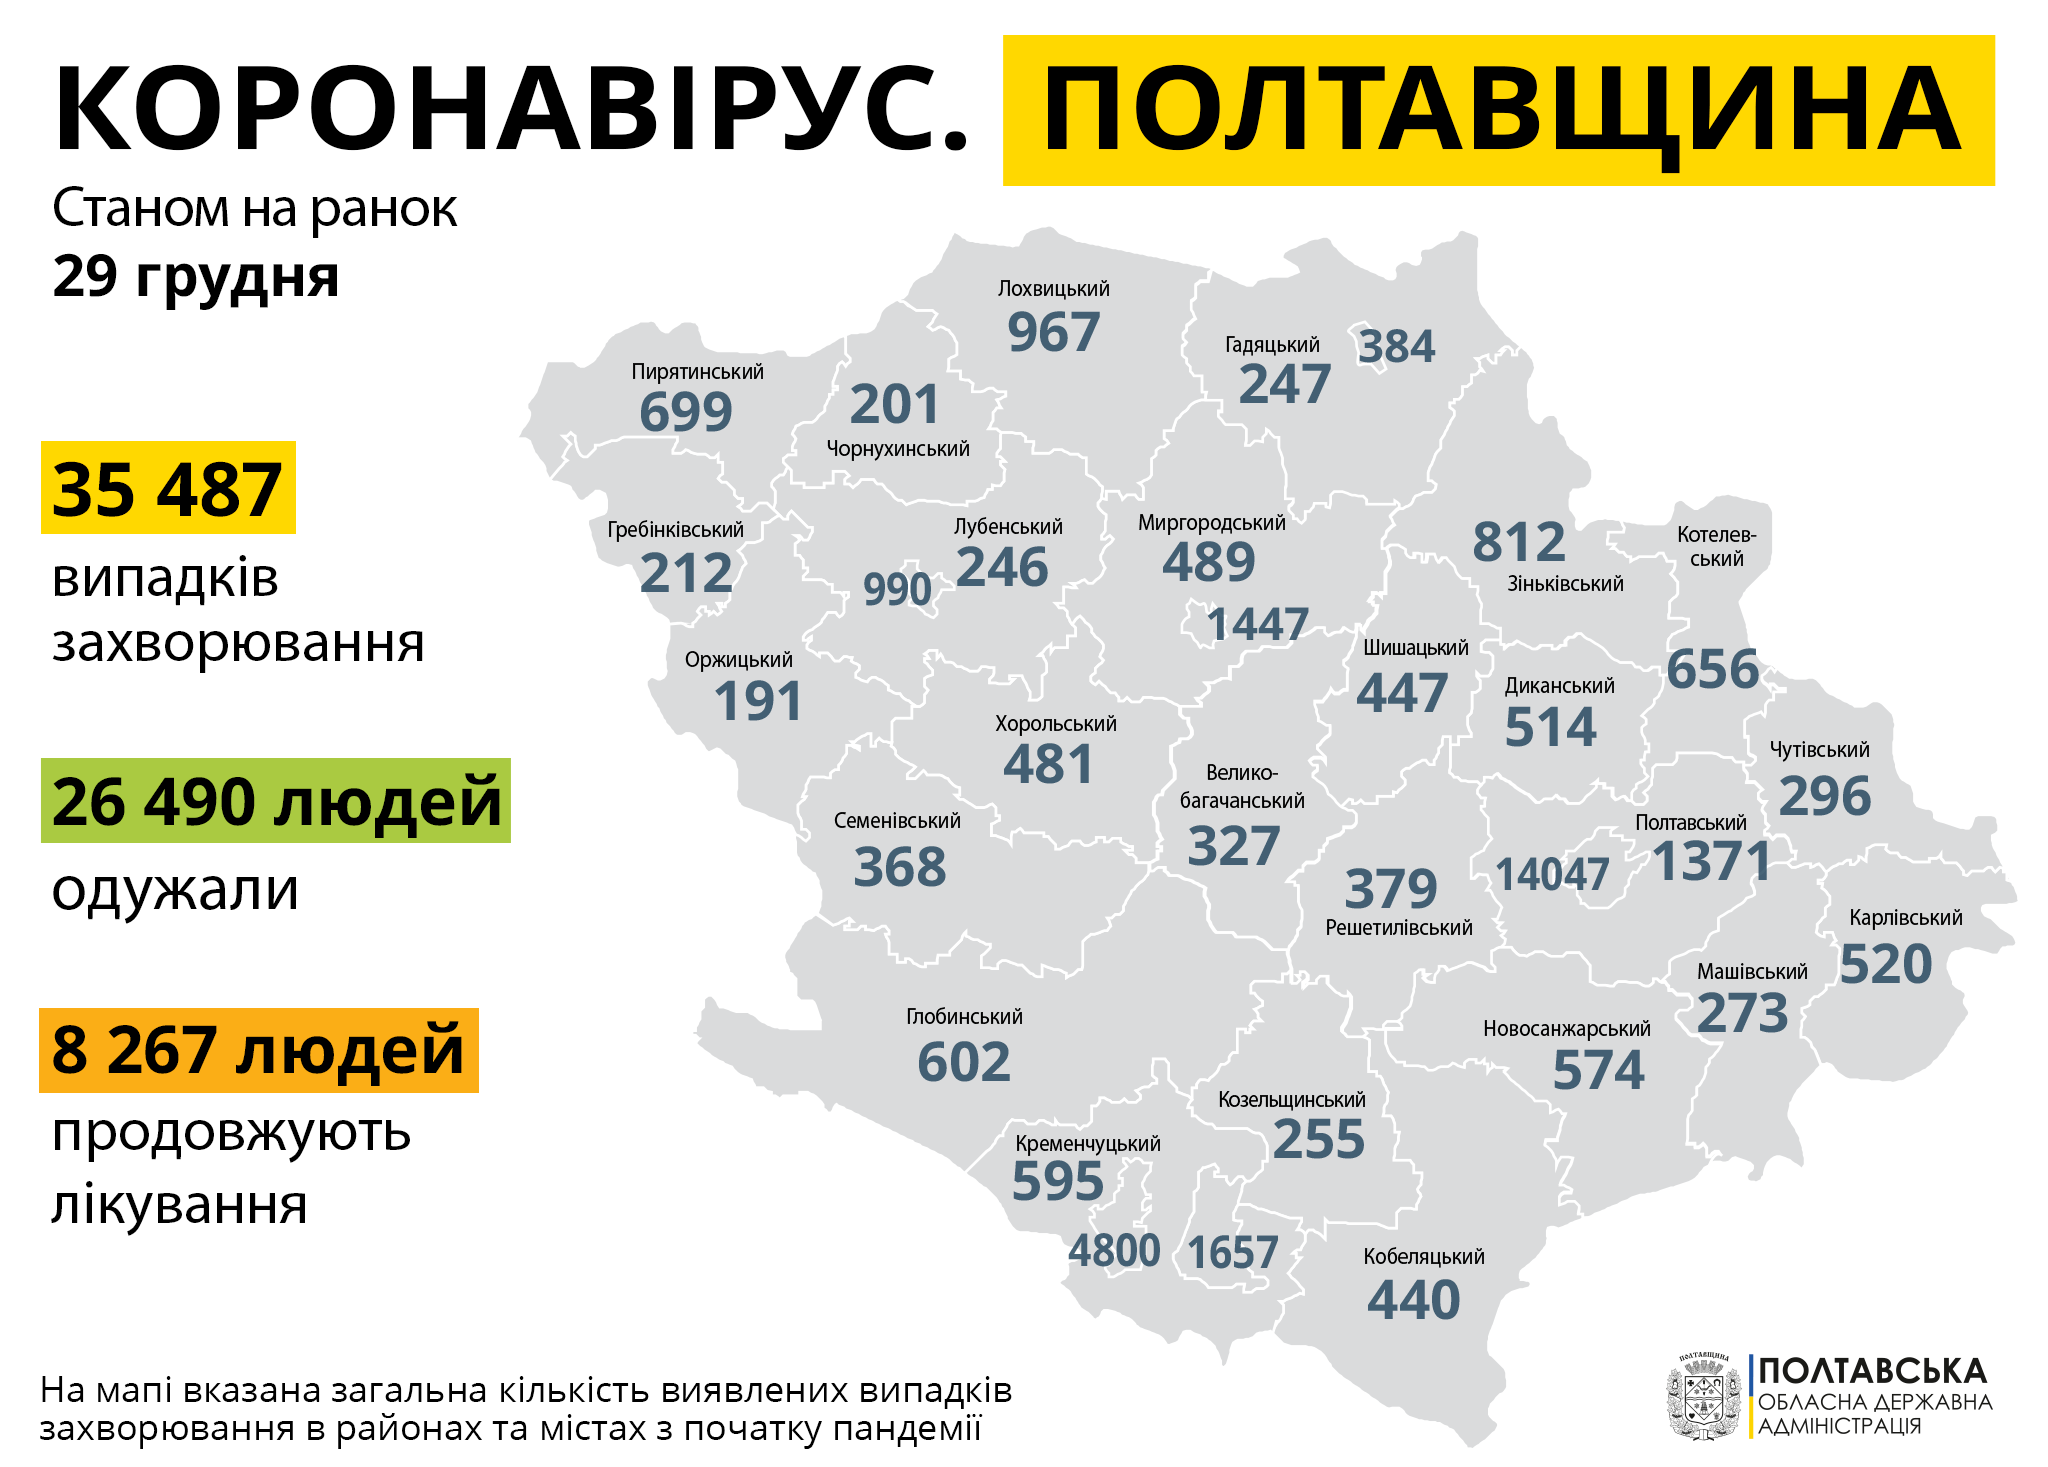 На Полтавщині за минулу добу зареєстровано 644 нові випадки захворювання на COVID-19